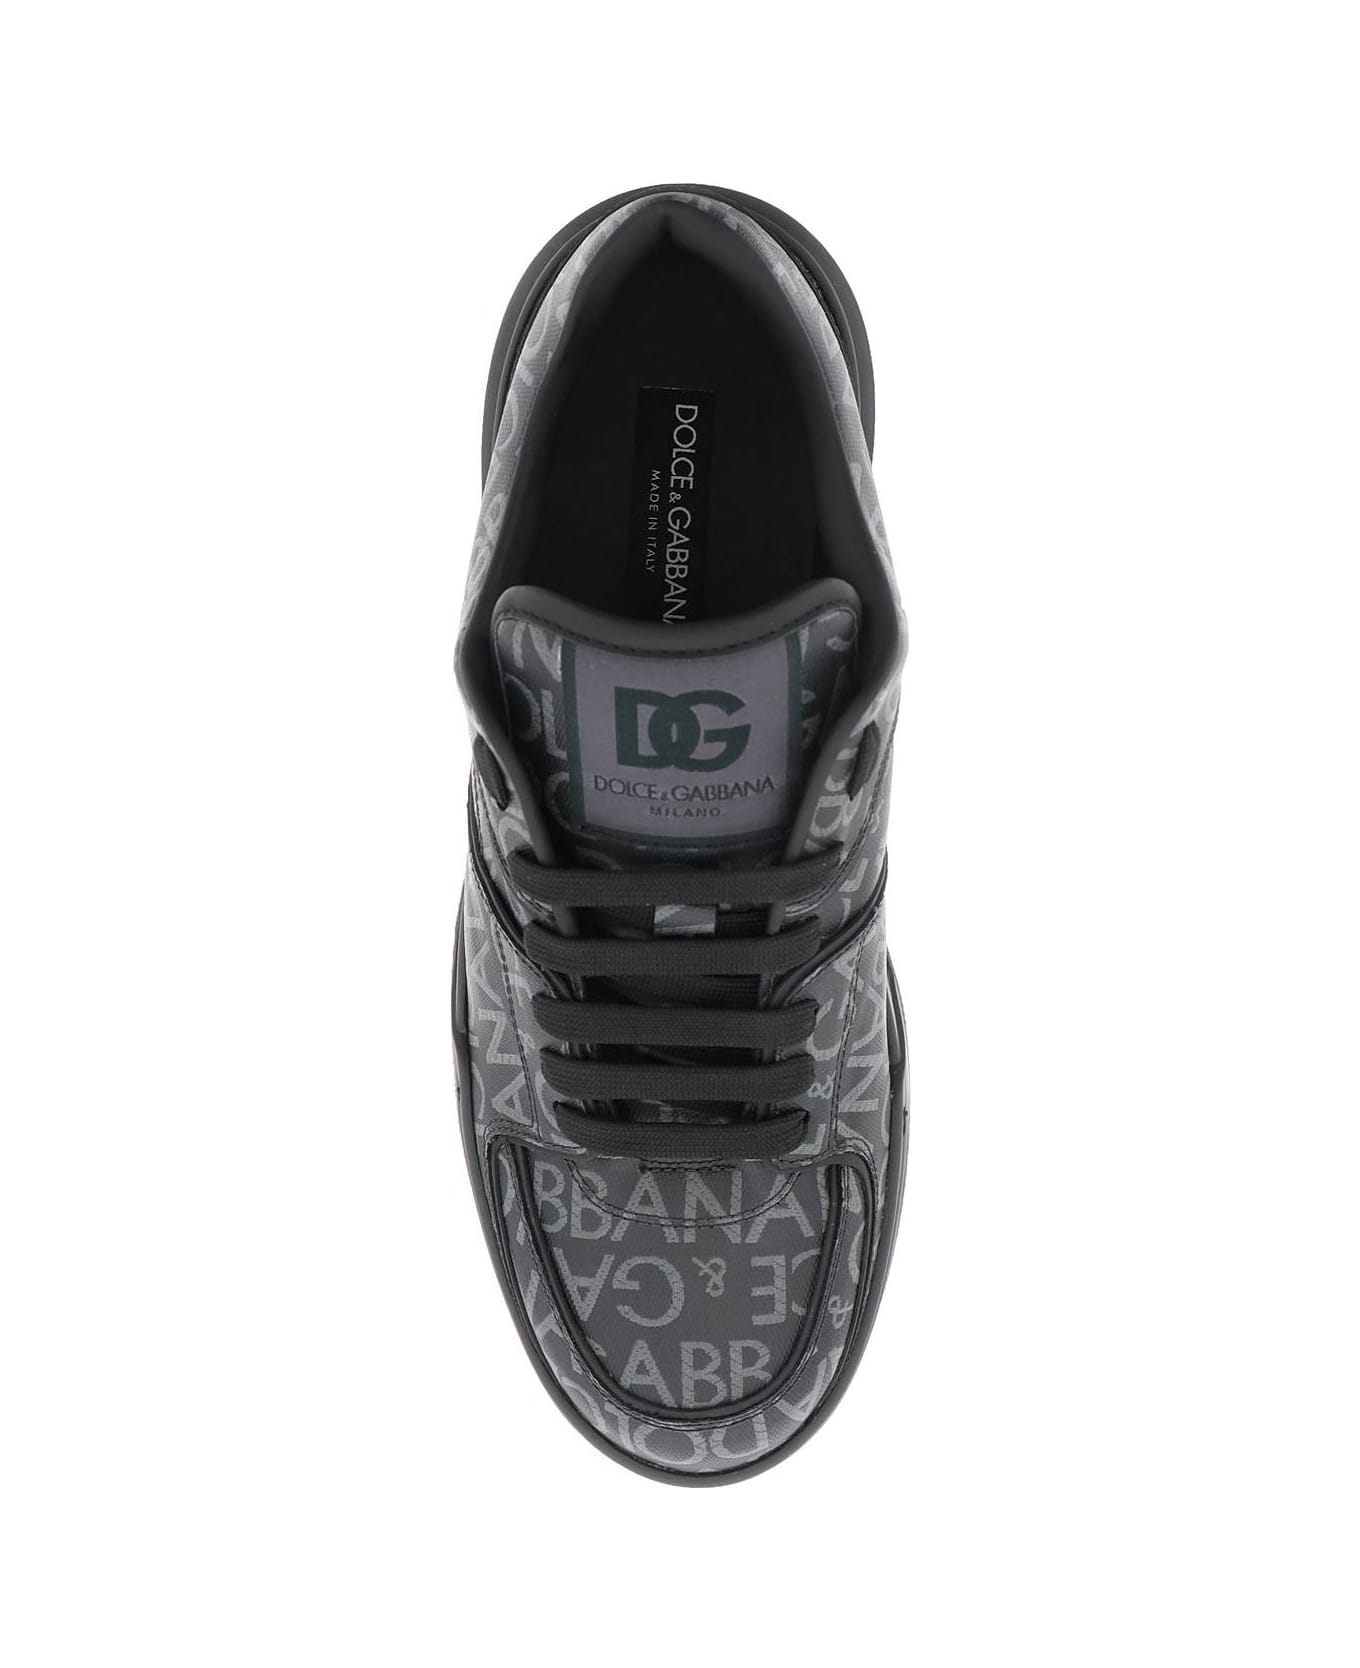 Dolce & Gabbana Roma Sneakers - Nero/grigio スニーカー